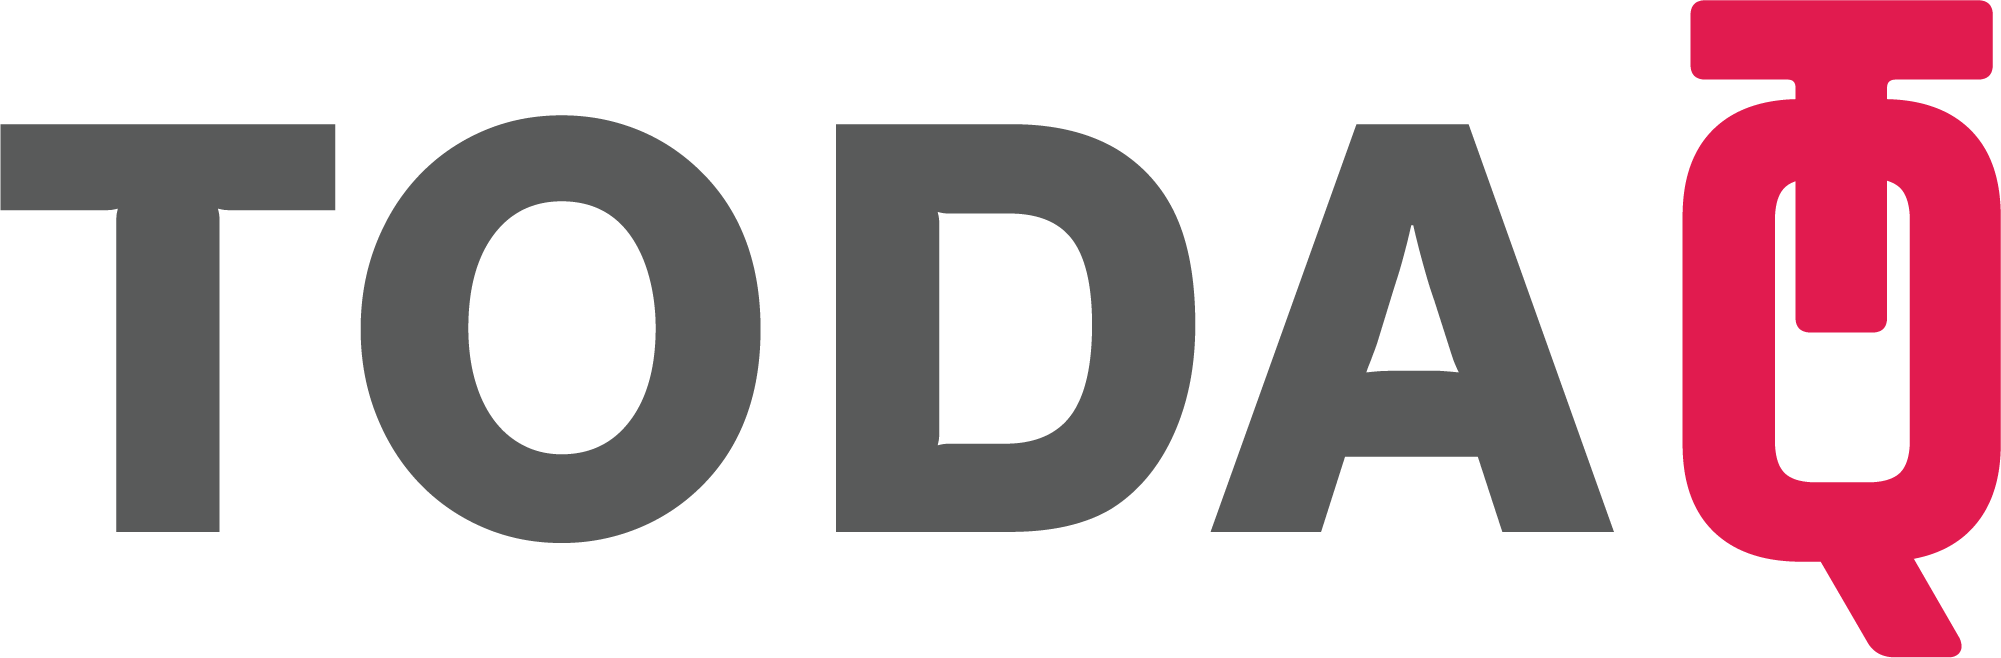 TODAQ Logo